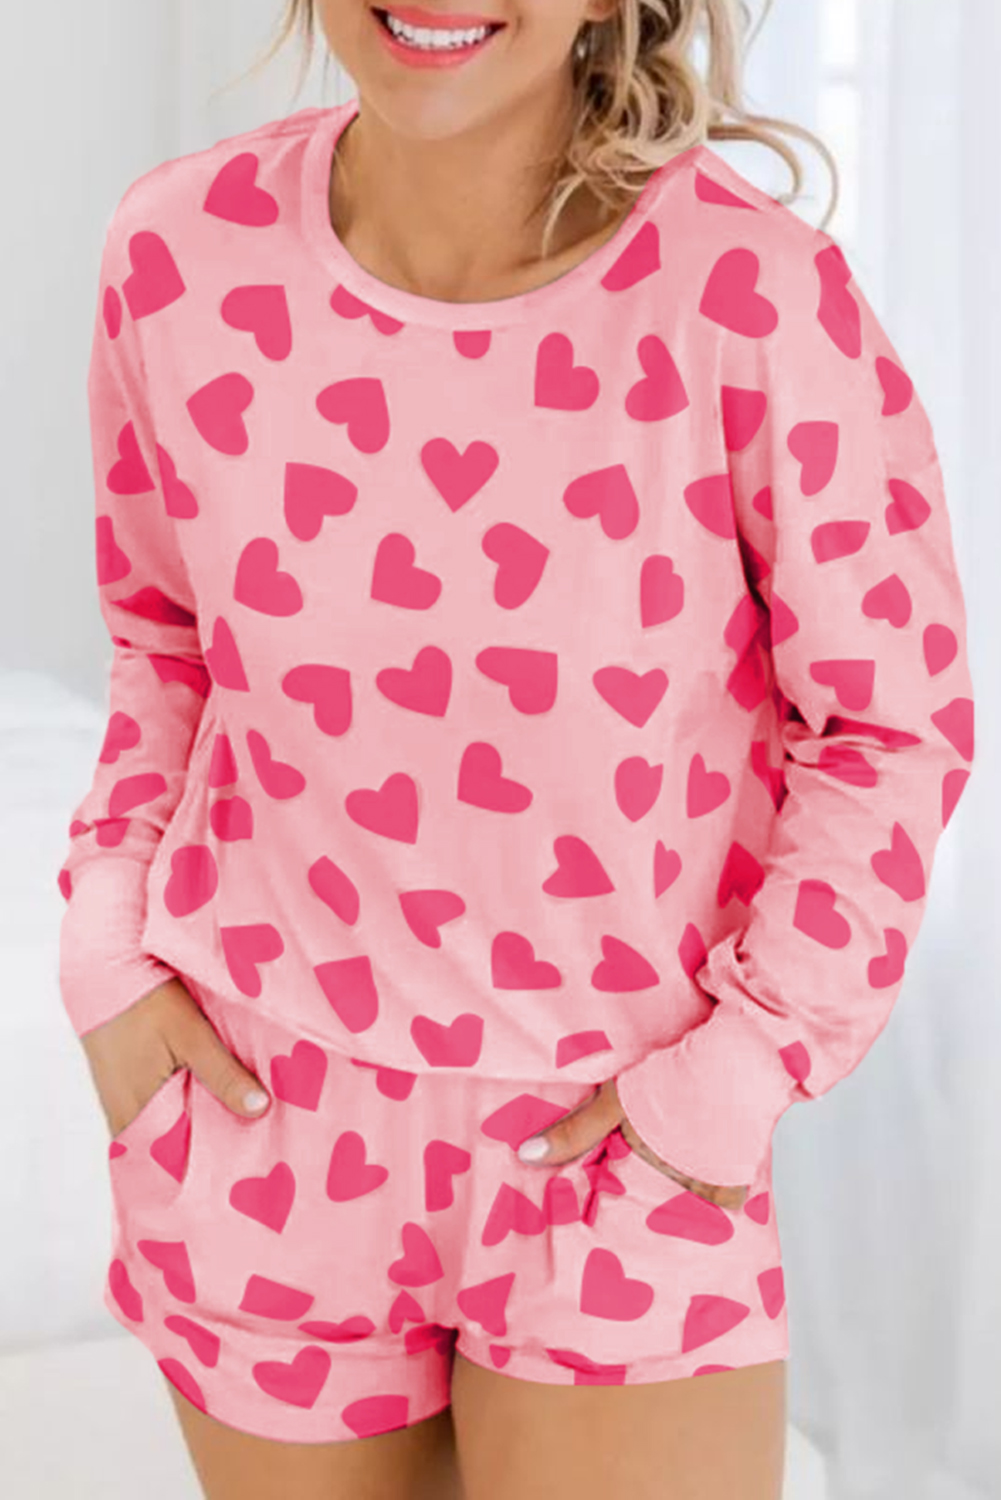  Pink Heart Print Long Sleeve Top and Shorts PAJAMA Set